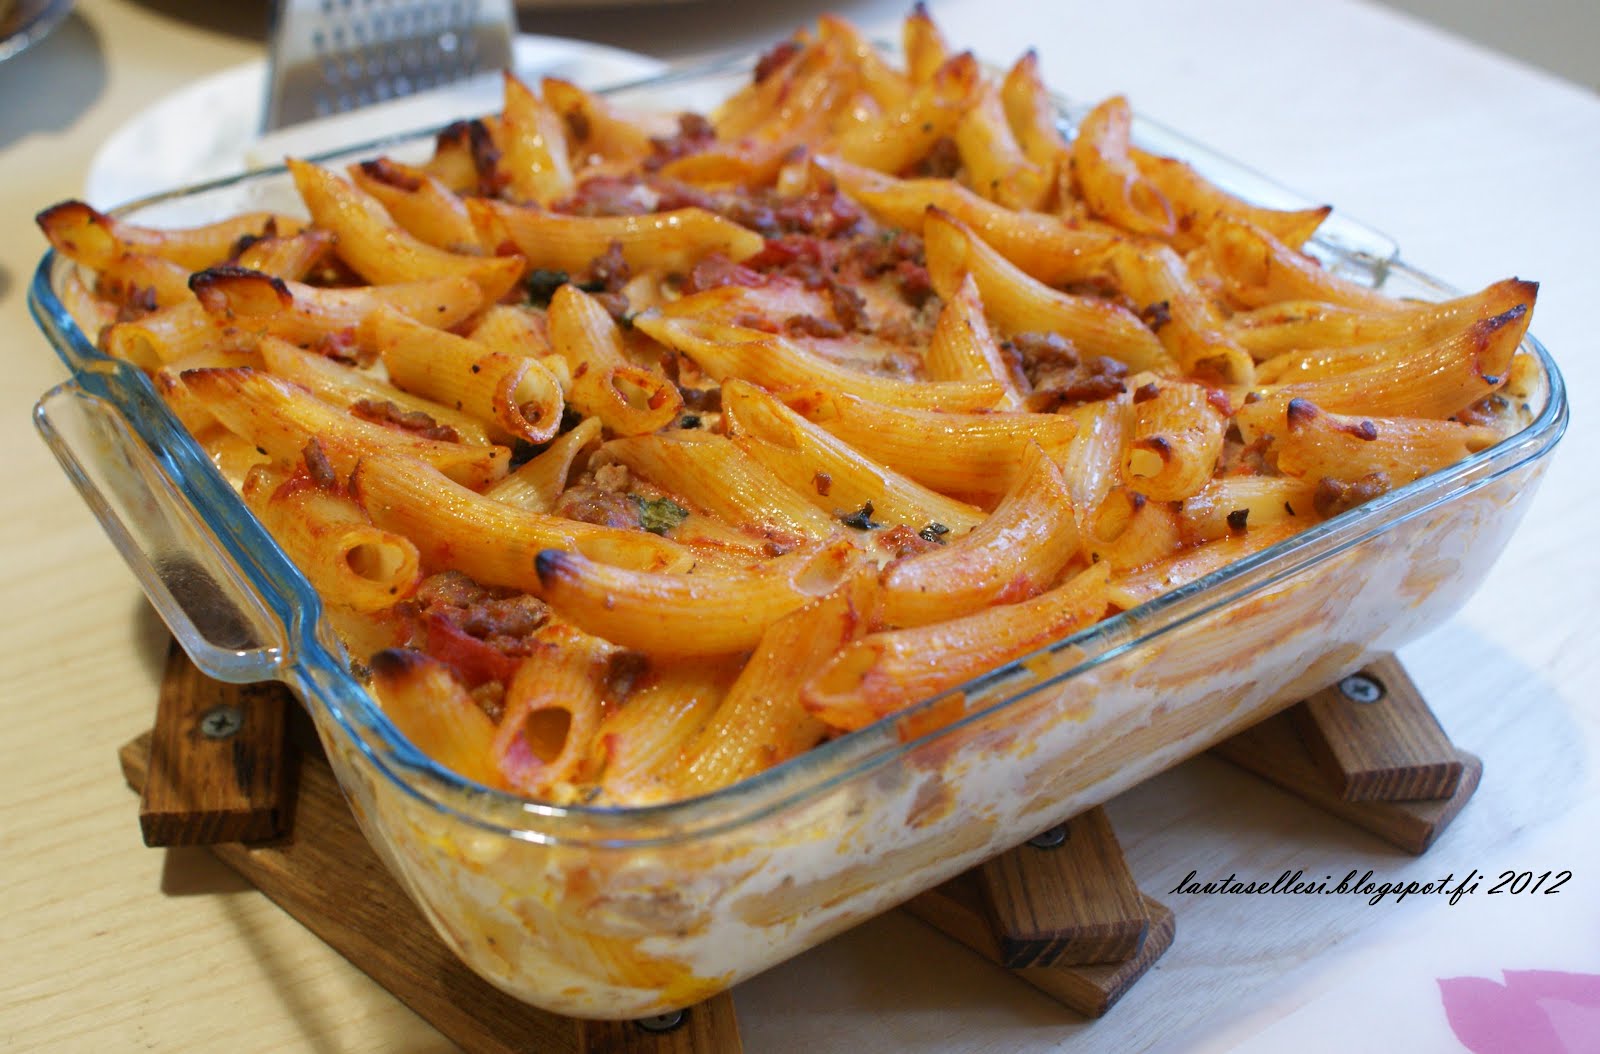 Lautasellesi - Sinu taldrikule: Tomaattinen pasta-jauhelihavuoka - Tomatine  pasta-hakklihavorm